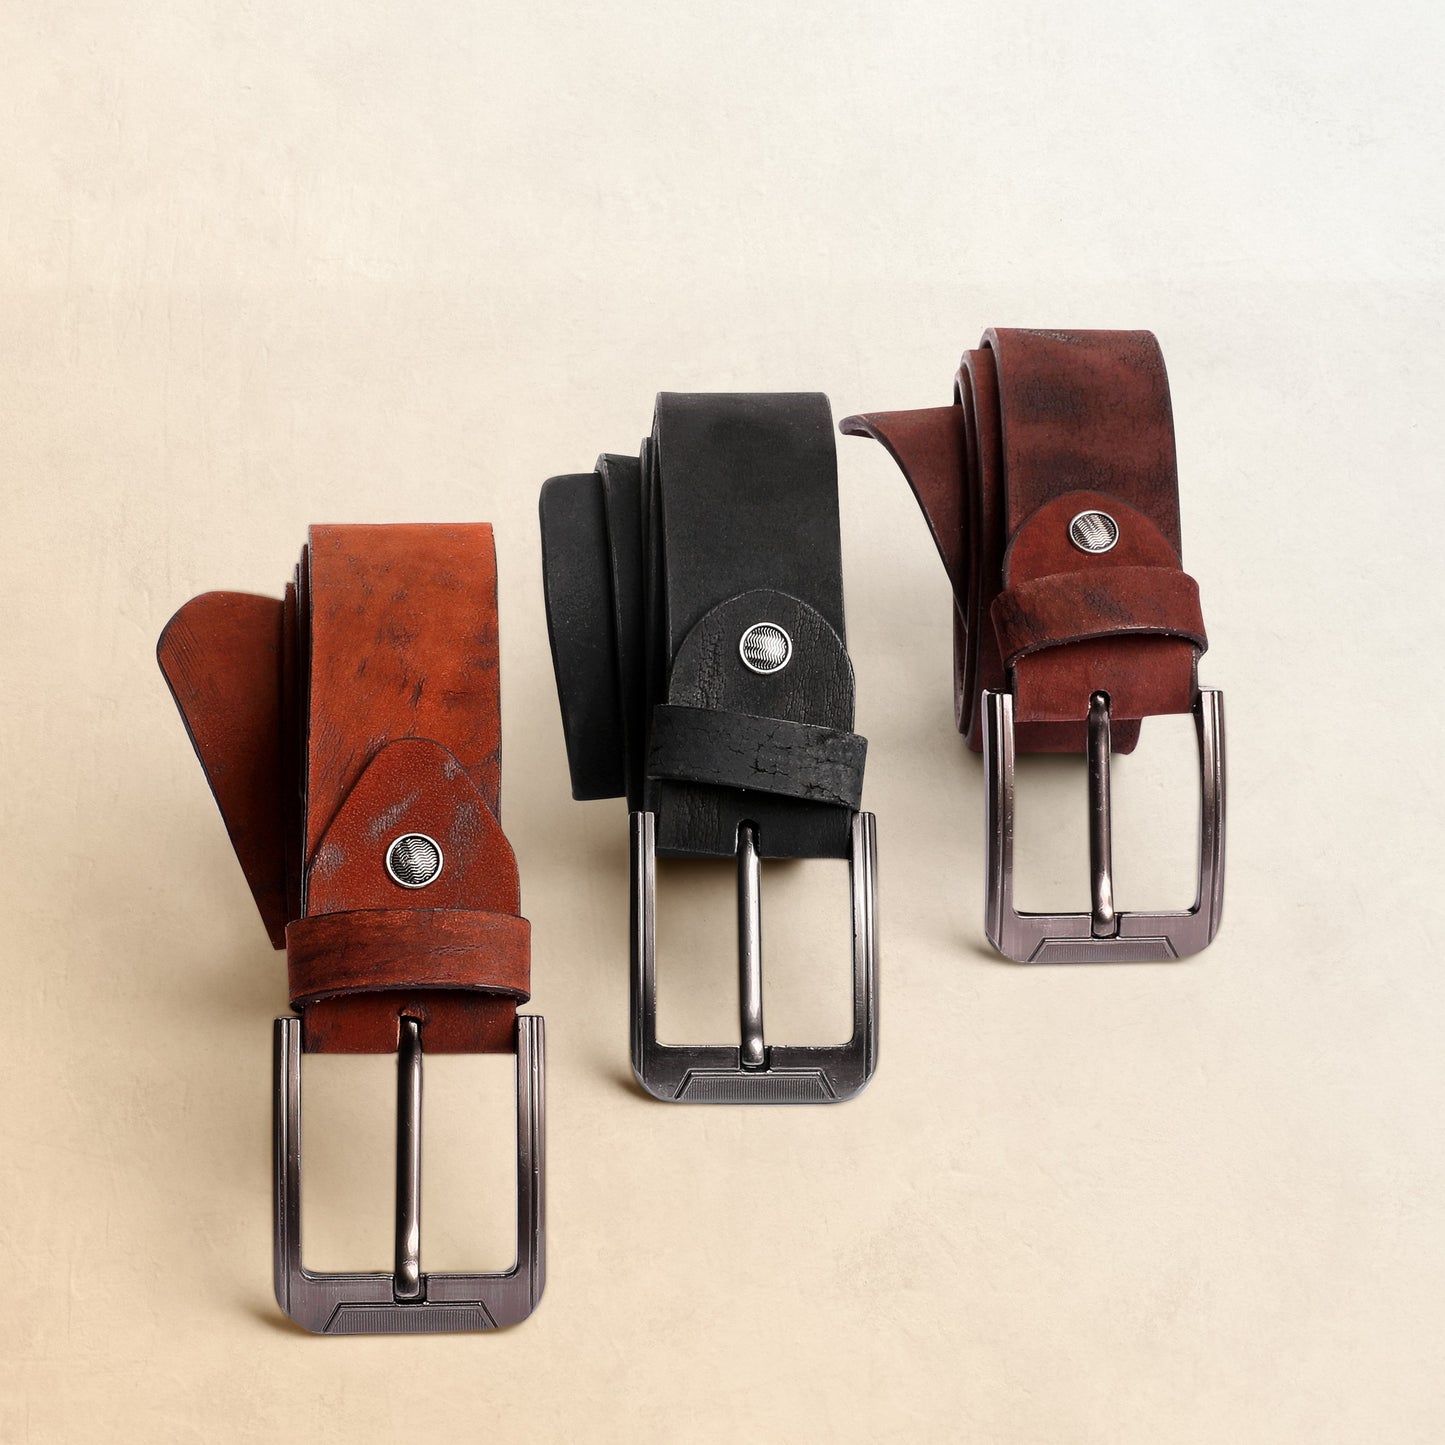 حزام جلد طبيعي مقلوب بمظهر مطفي من تيستا تورو b8